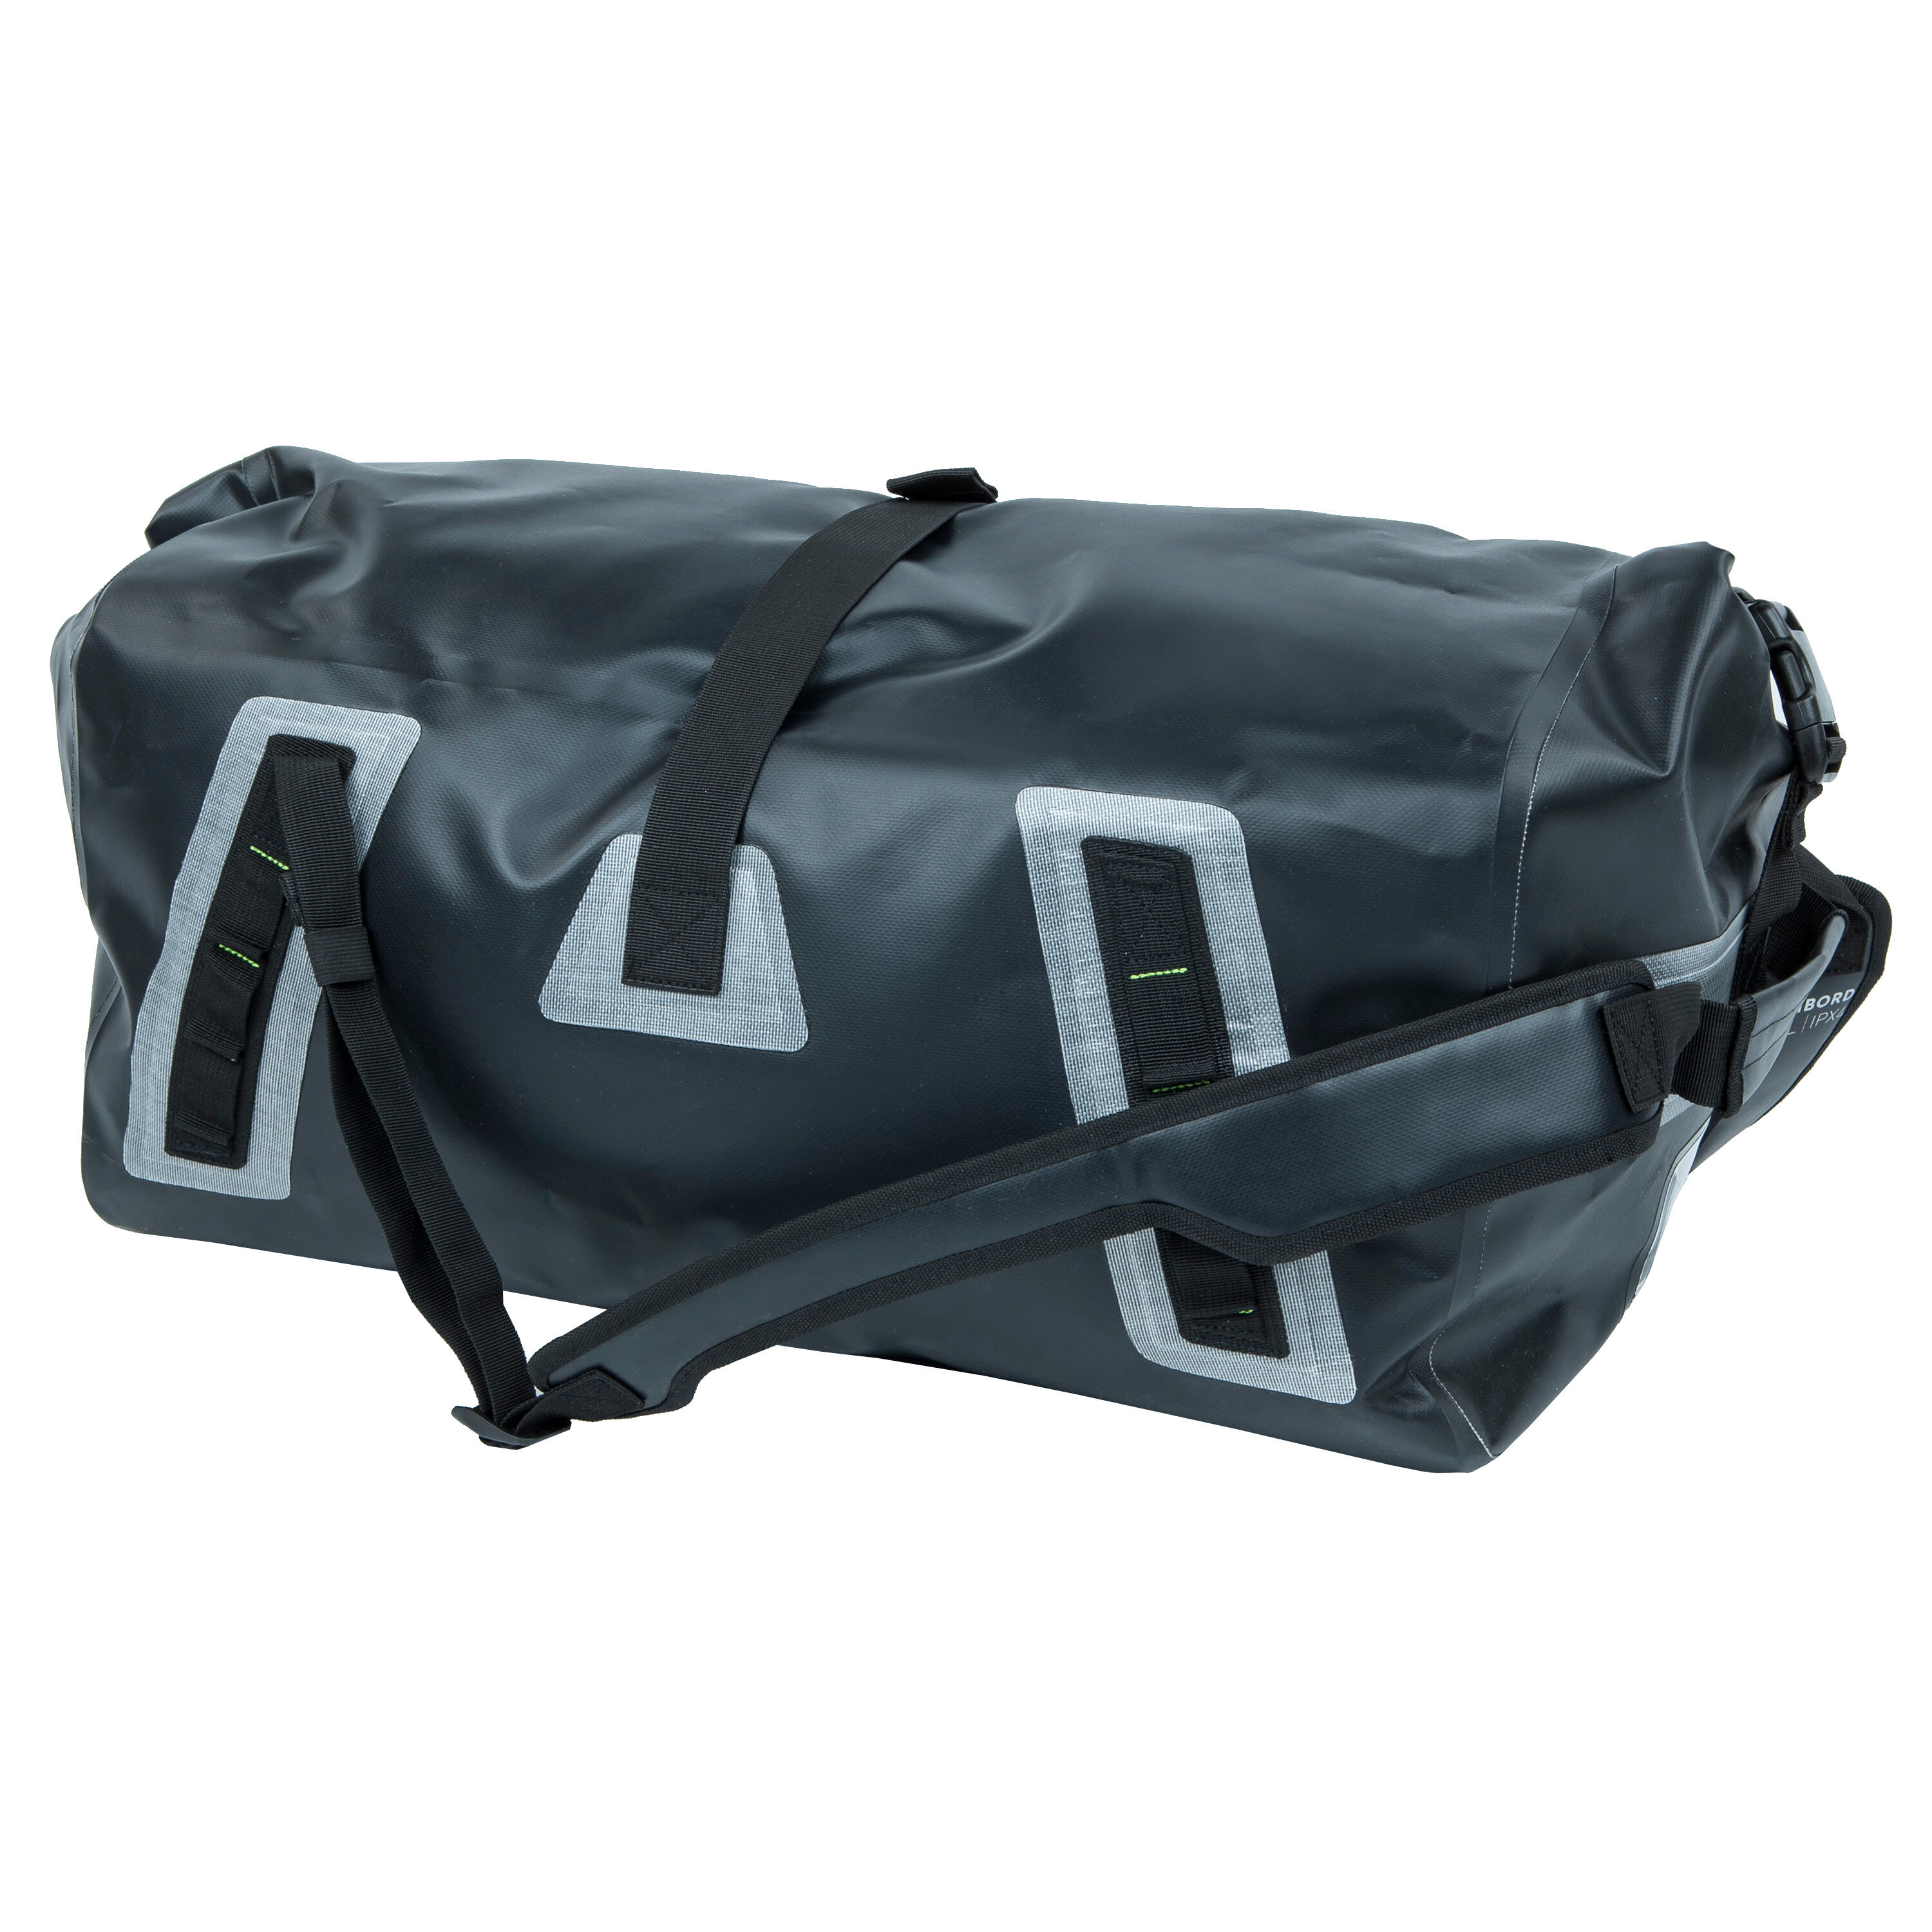 Waterproof duffle bag - travel bag 60 L black 3/8